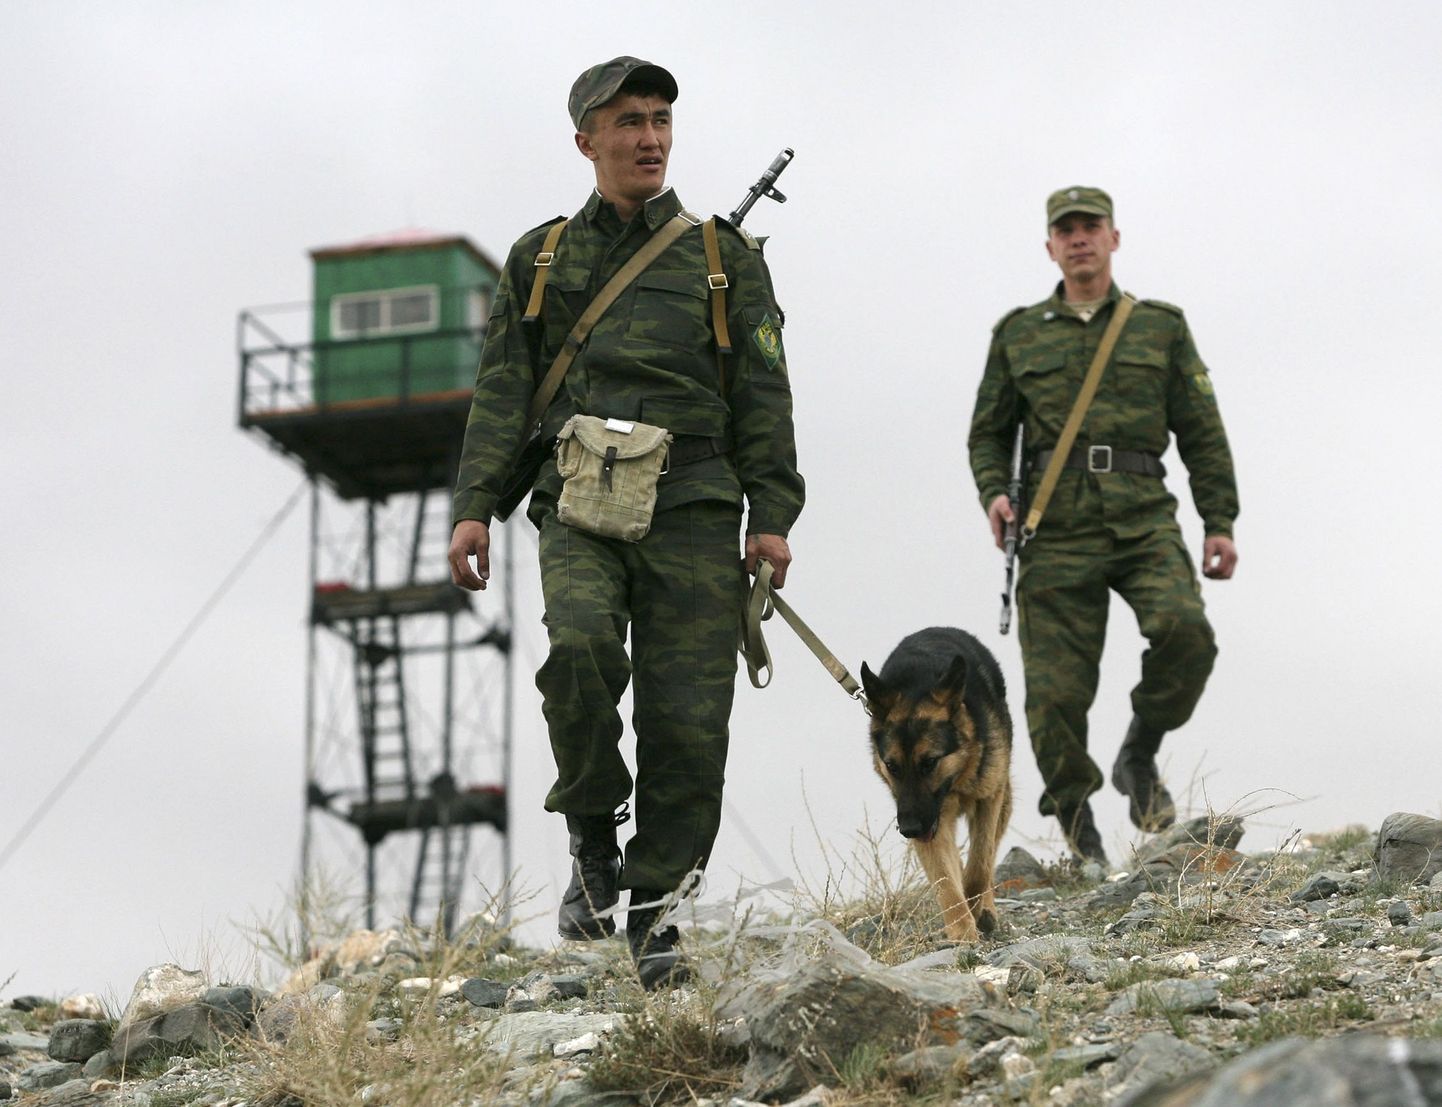 Vene ajateenijad patrullimas Mongoolia piiril. Pilt pole seotud traagiliste sündmustega Sergejevkas.